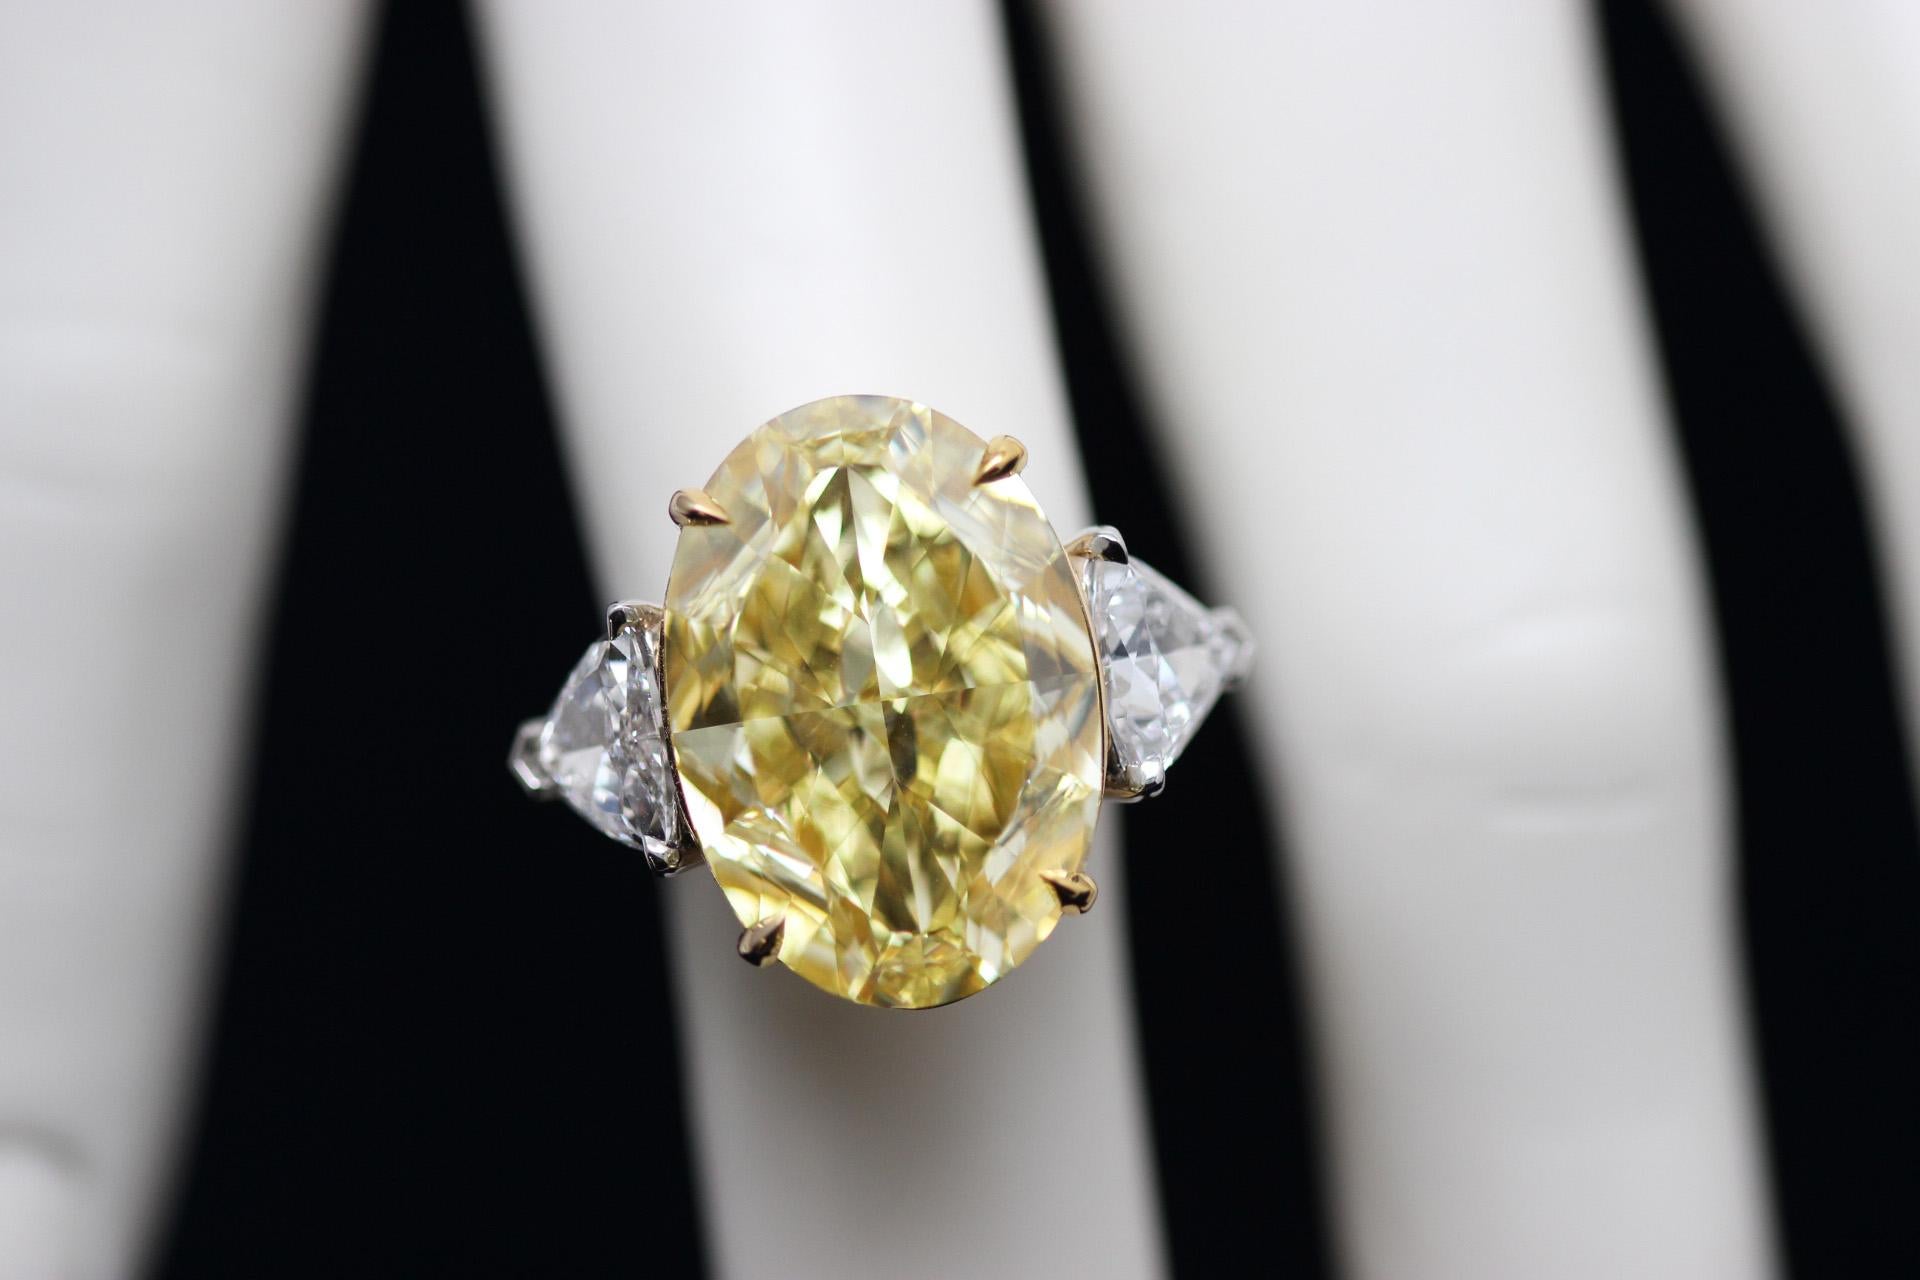 Ein moderner Klassiker von Scarselli  - ein GIA-zertifizierter 20,02-Karat-Diamant im ovalen Fancy-Intensiv-Gelb-Schliff, eingefasst in einen Korb aus 18 Karat Gelbgold mit einem Platinband. Zwei weiße Diamanten im Trapezschliff (insgesamt 2,01